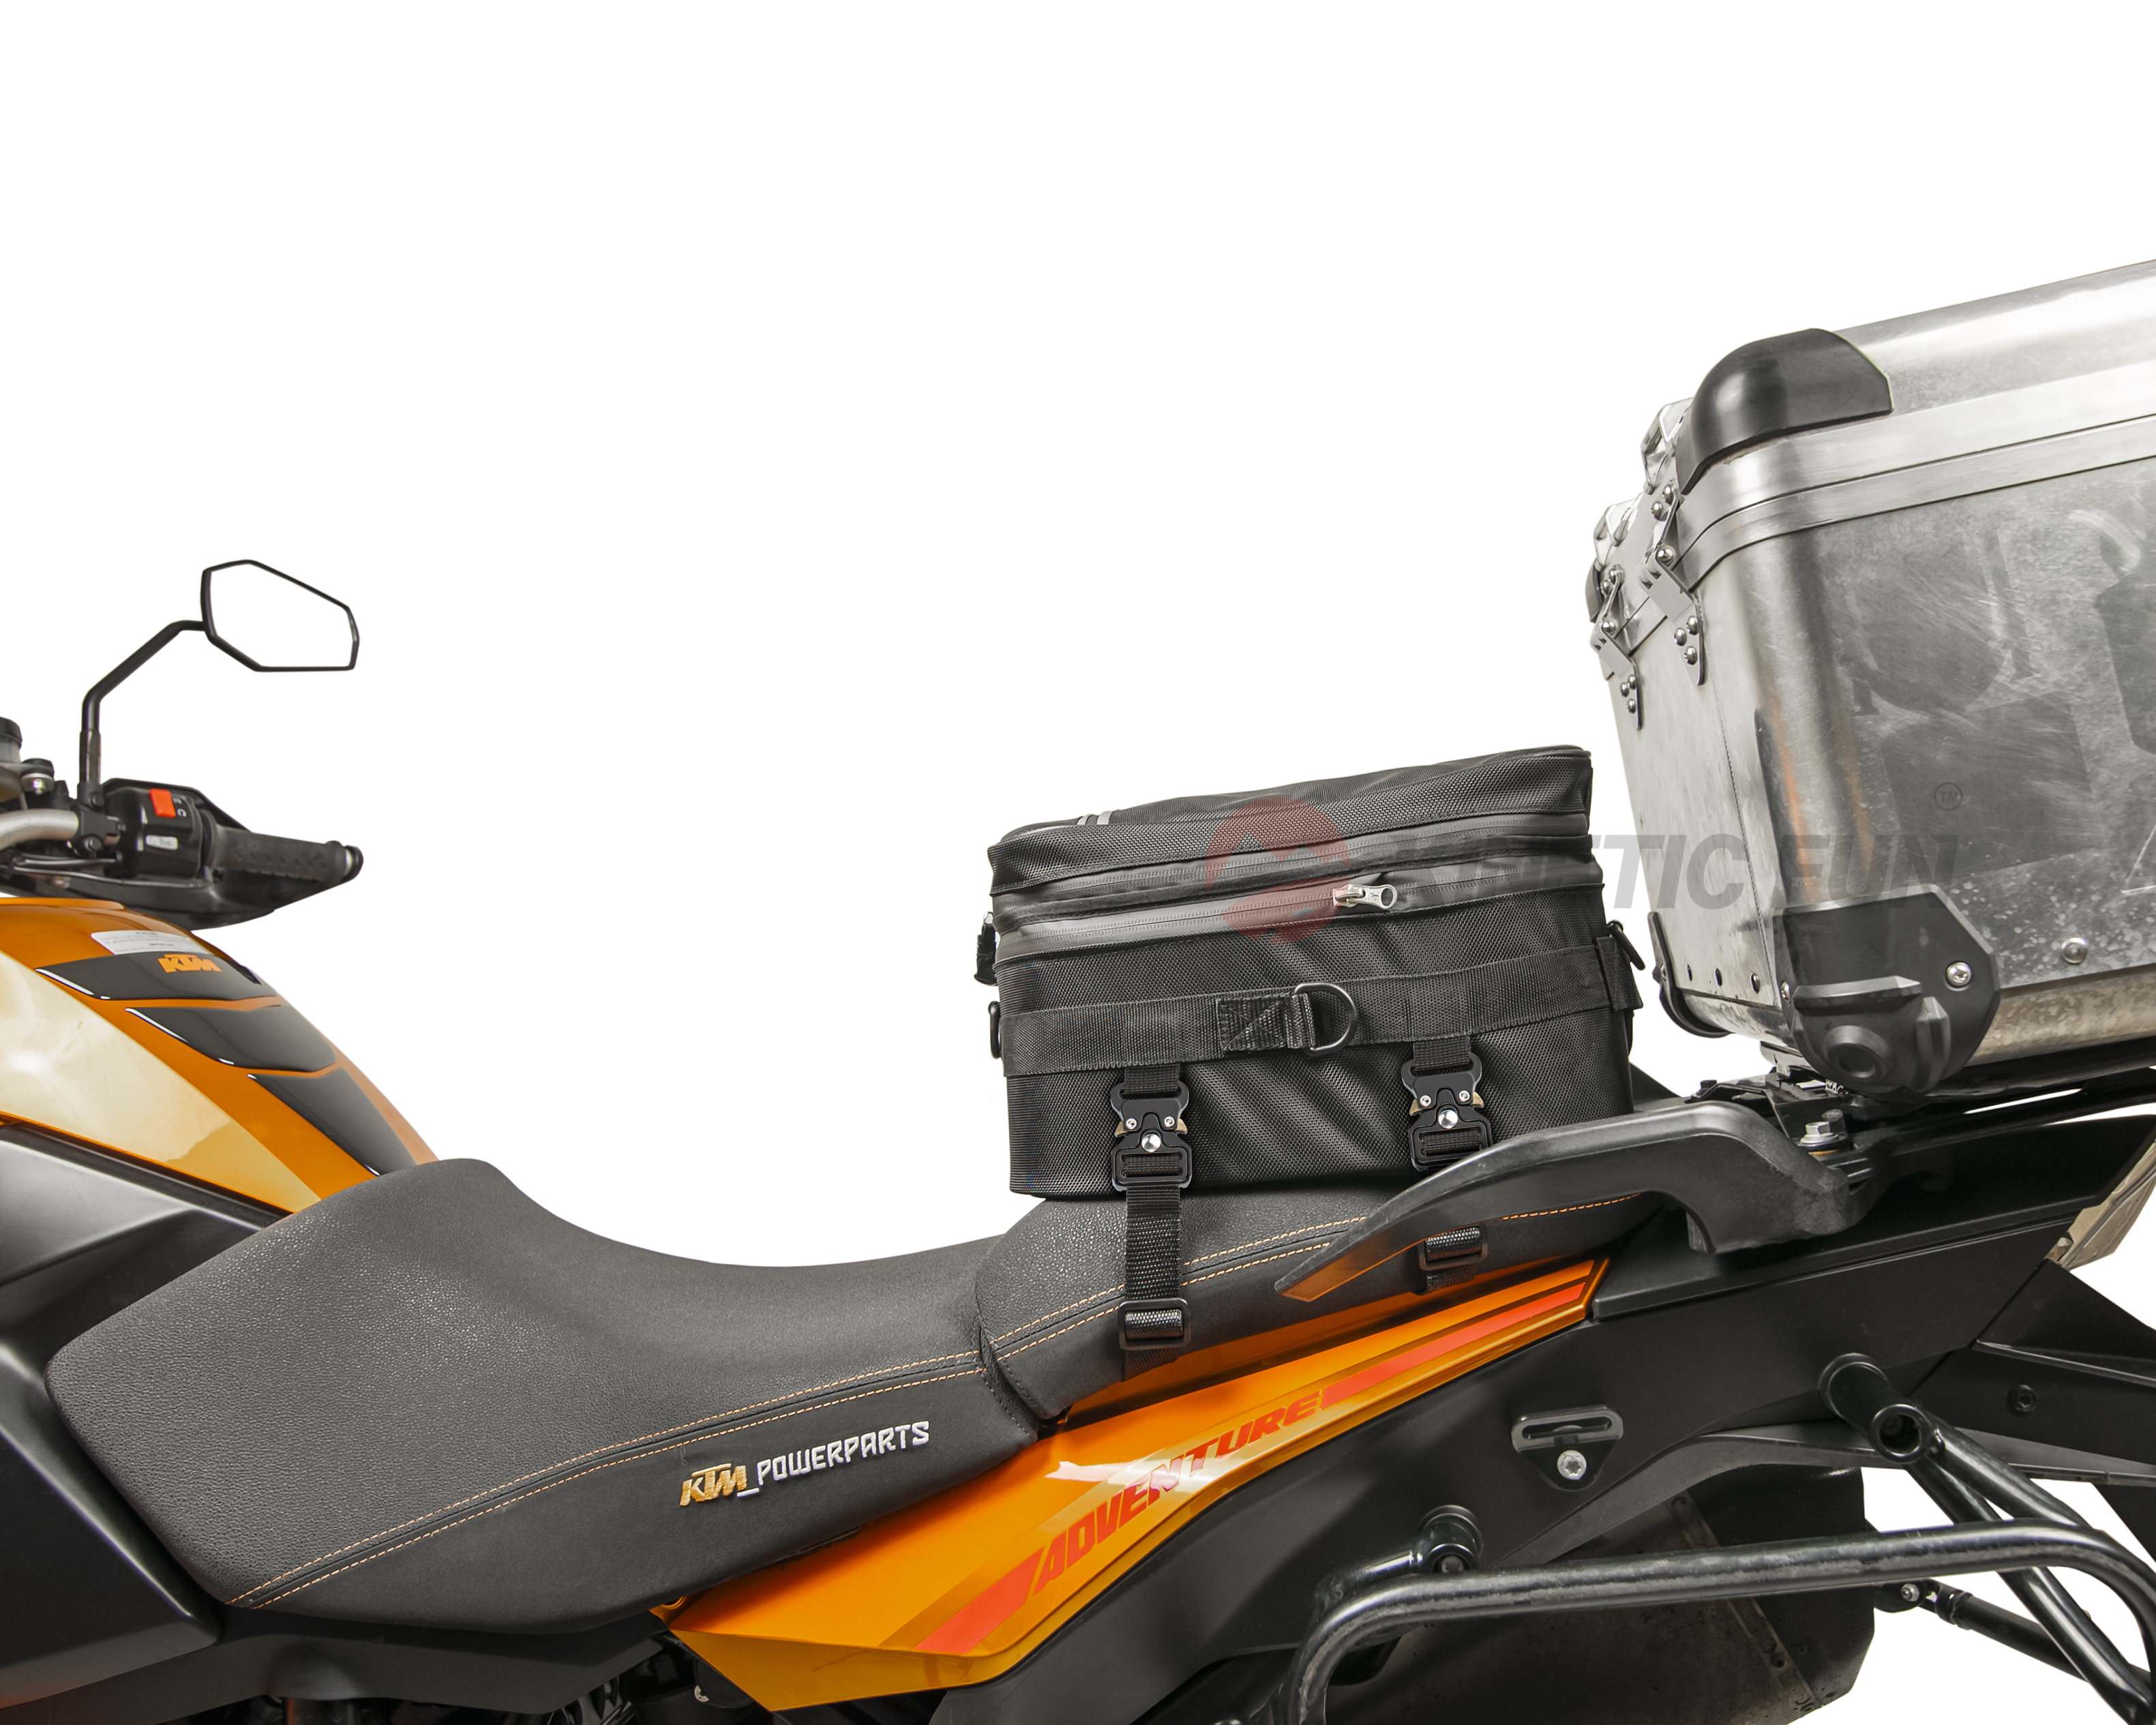 Сумка на хвост мотоцикла Moto Guzzi - Touring, объём 12-20 литров